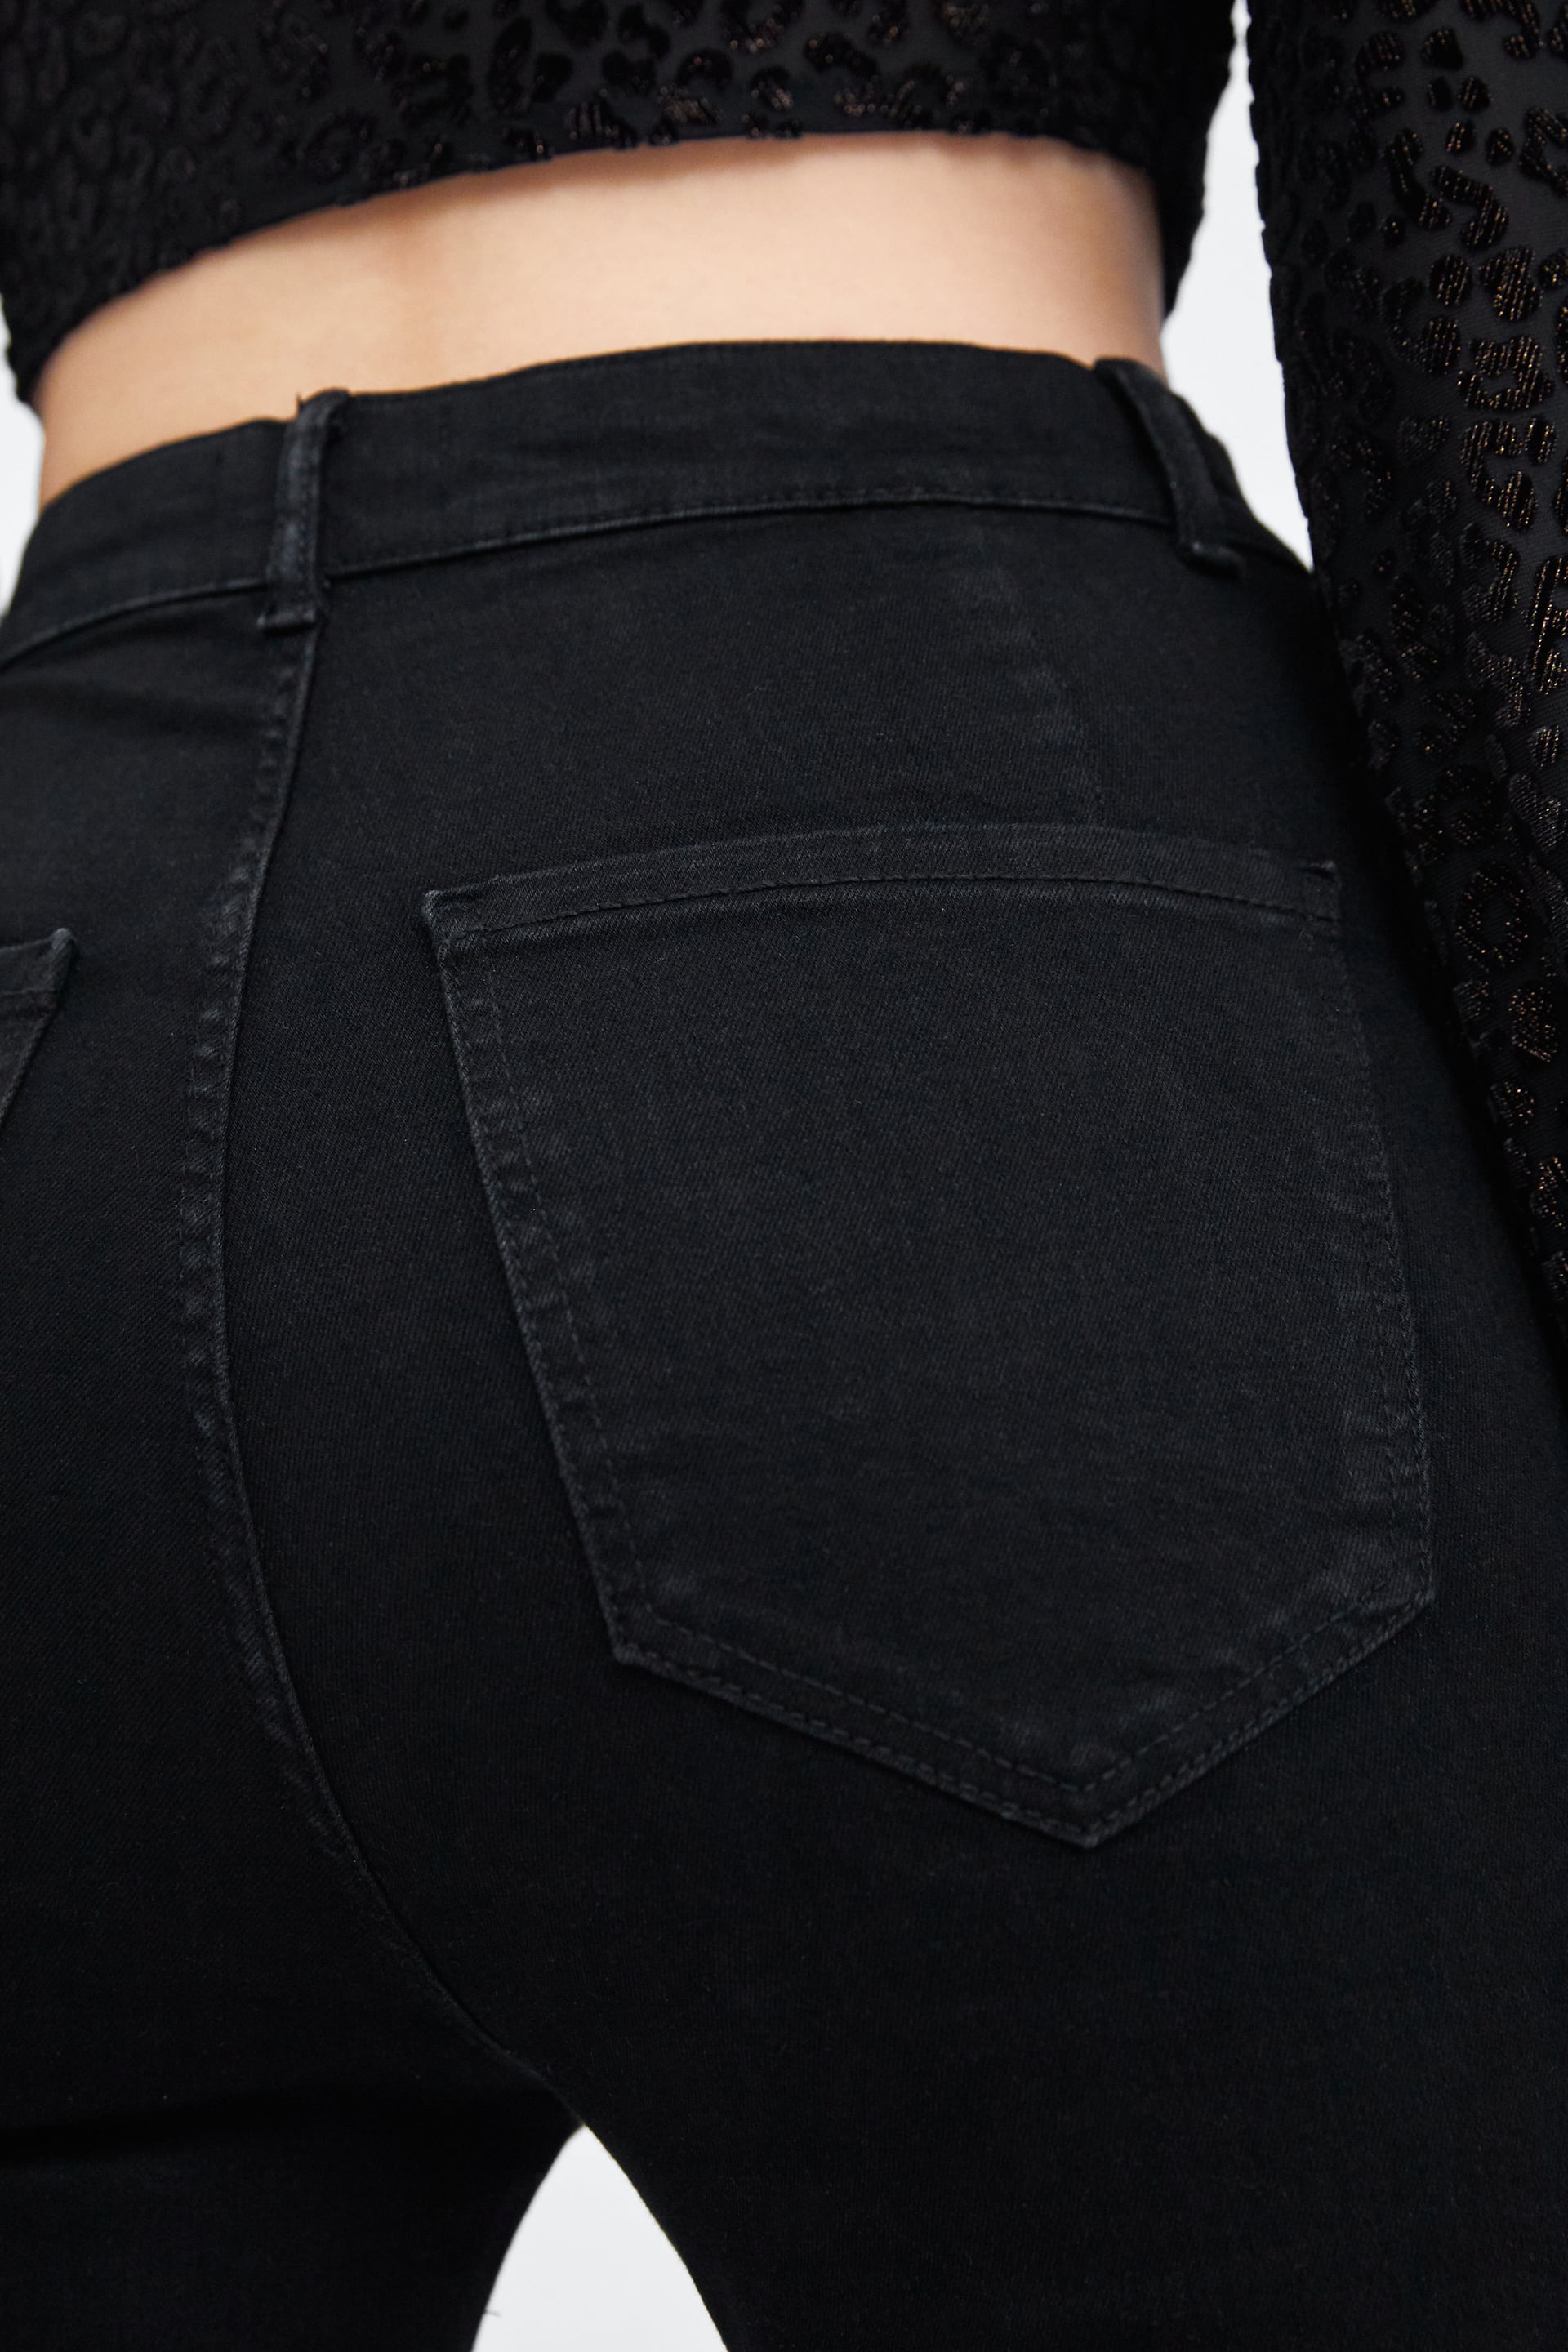 شلوار جینز زنانه 23967 سایز 32 تا 46 کد 1